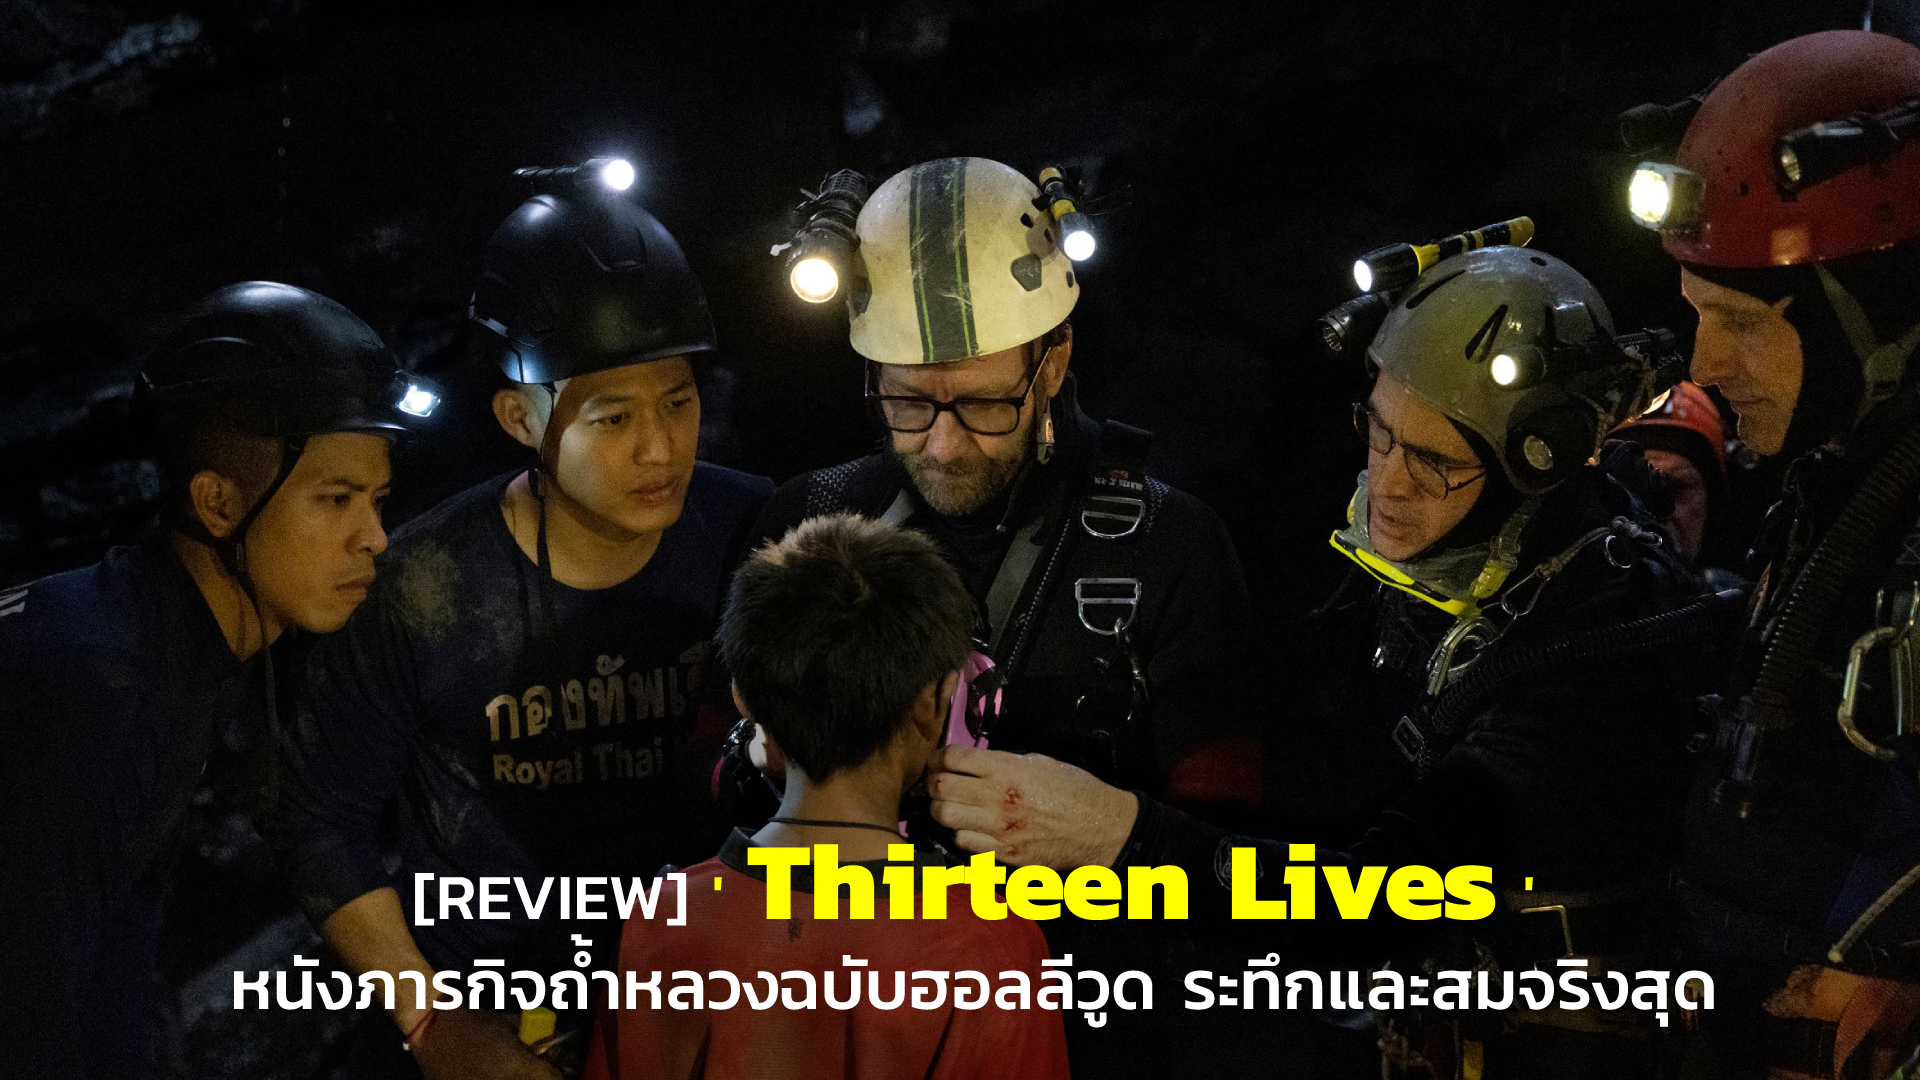 [REVIEW] 'Thirteen Lives' หนังภารกิจถ้ำหลวงฉบับฮอลลีวูด ระทึกและสมจริงสุด | GOSSIP GUN